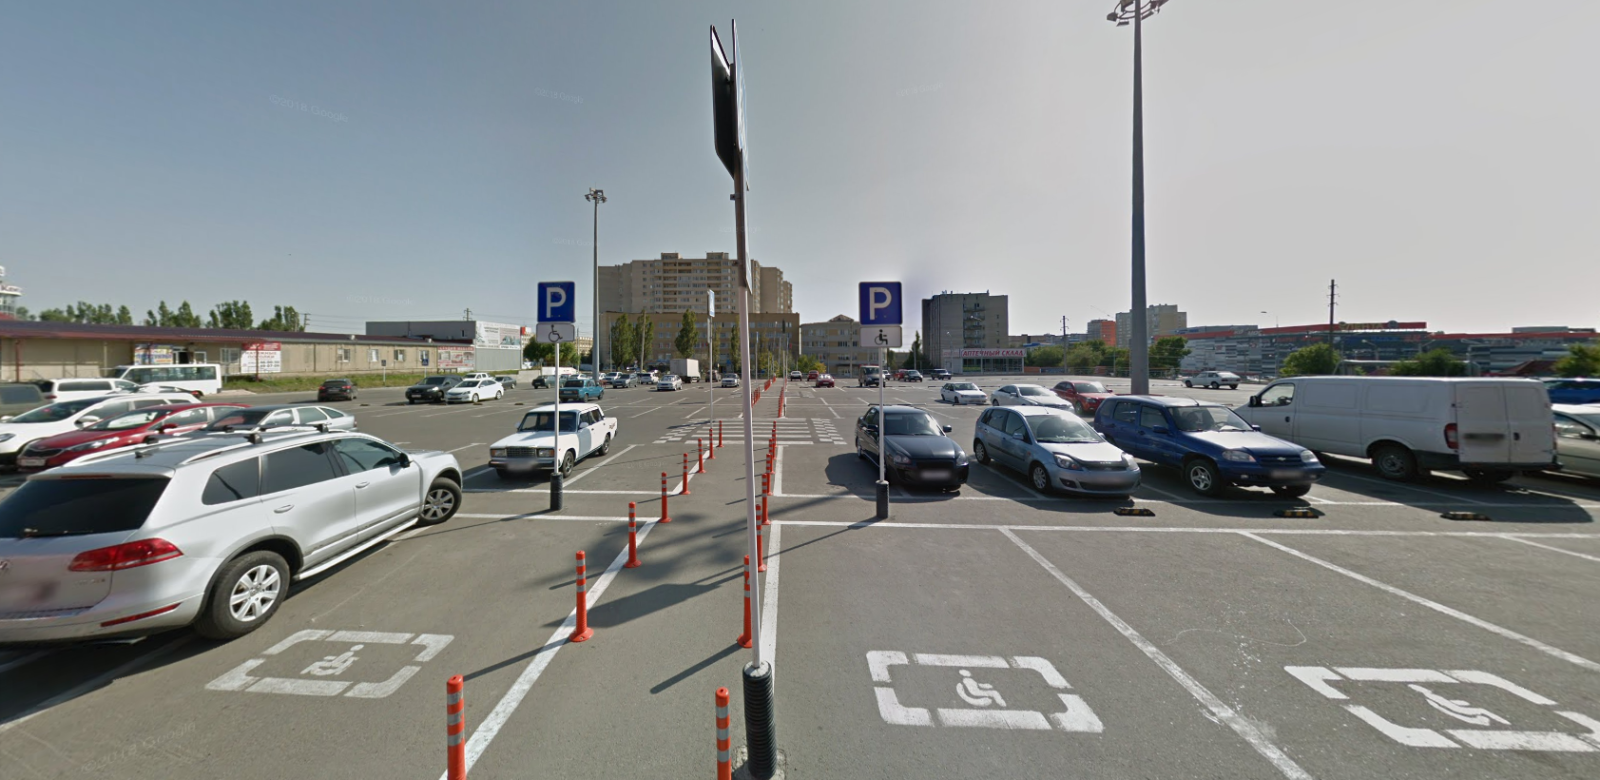 Ограничение пешеходной зоны с помощью гибких столбиков 750 мм, знаки 8.17 — инвалиды (парковка супермаркета «Магнит», г. Ставрополь))